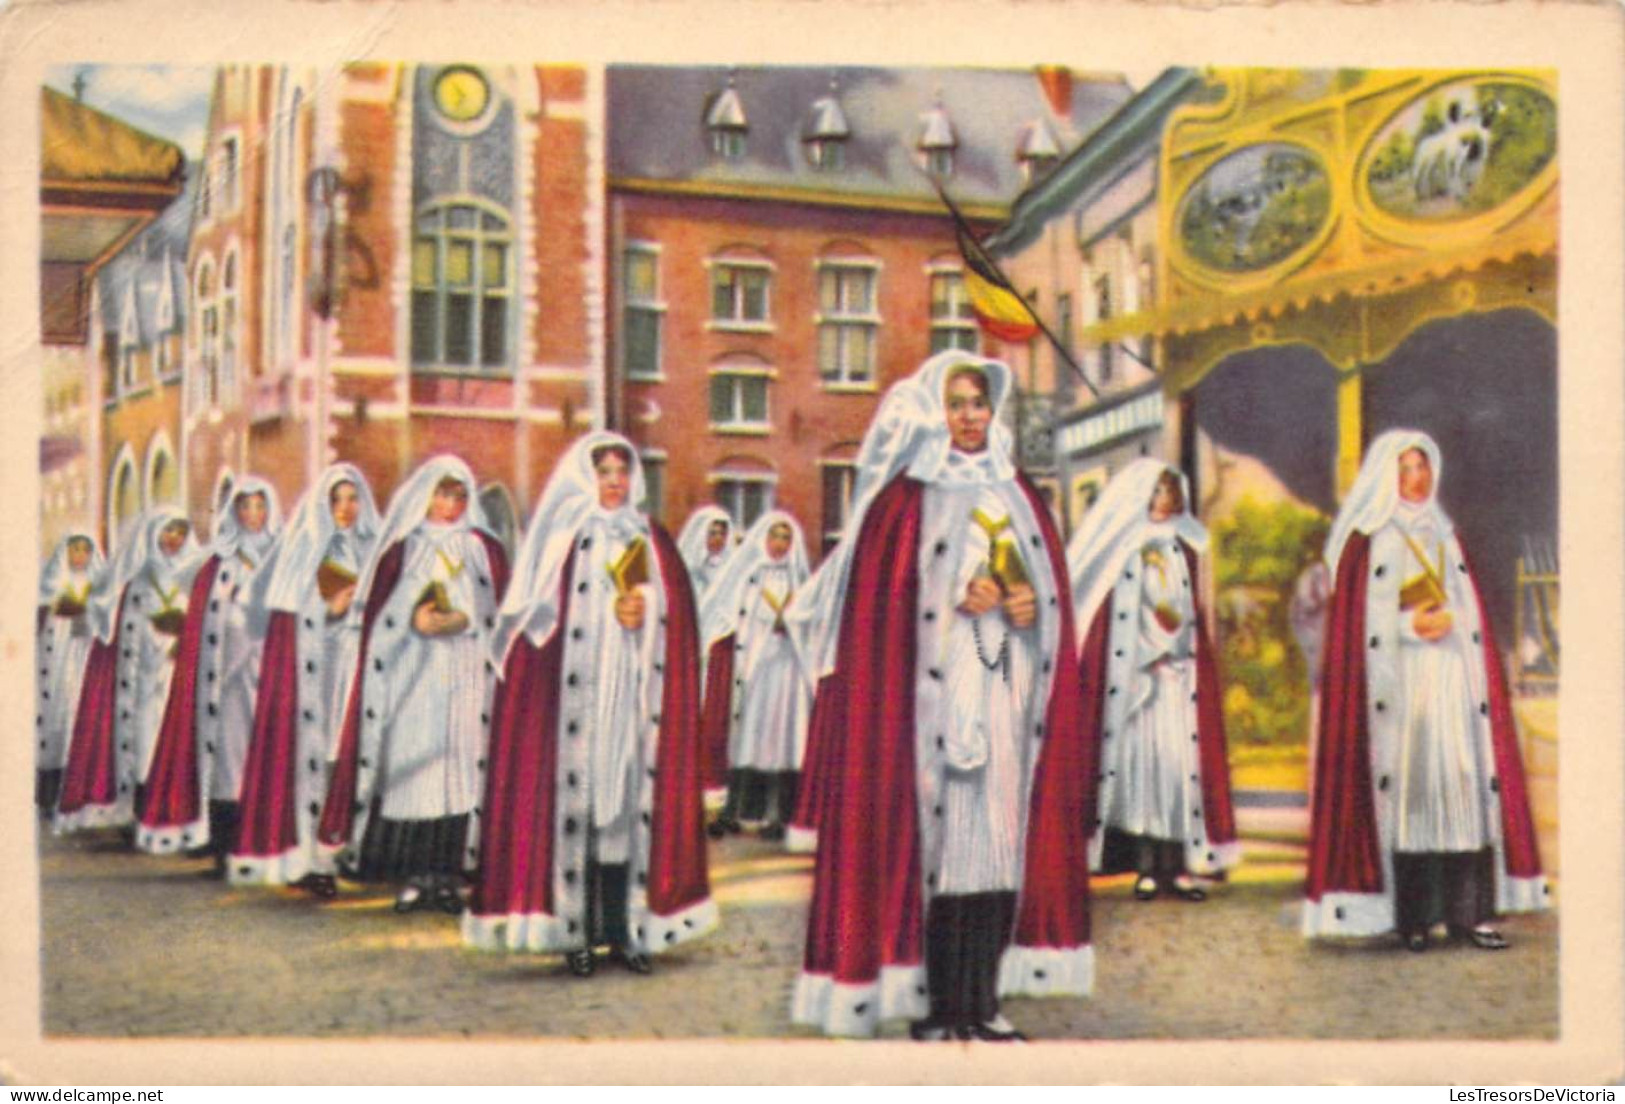 Lot de 19 chromos Cote d'or - Folklore Belge